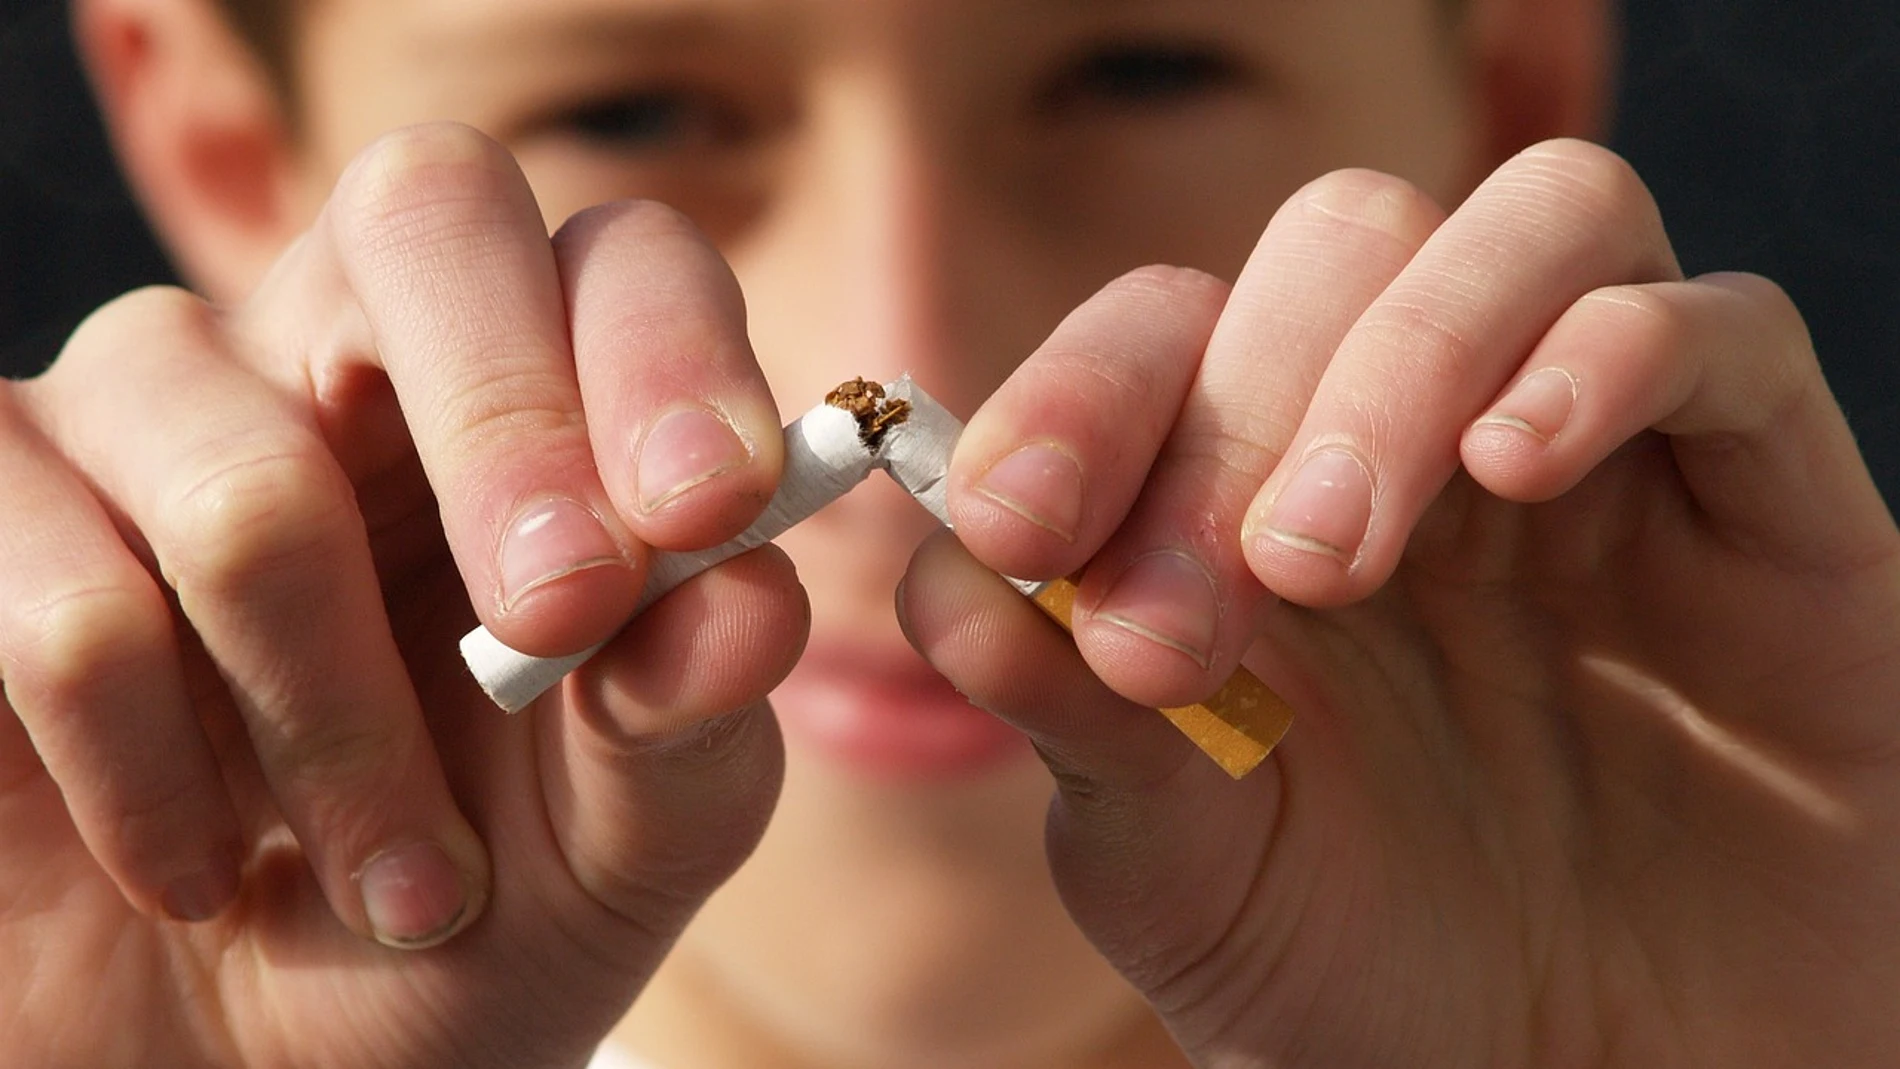 Medidas de Reino Unido para dejar de fumar: regalará vapers